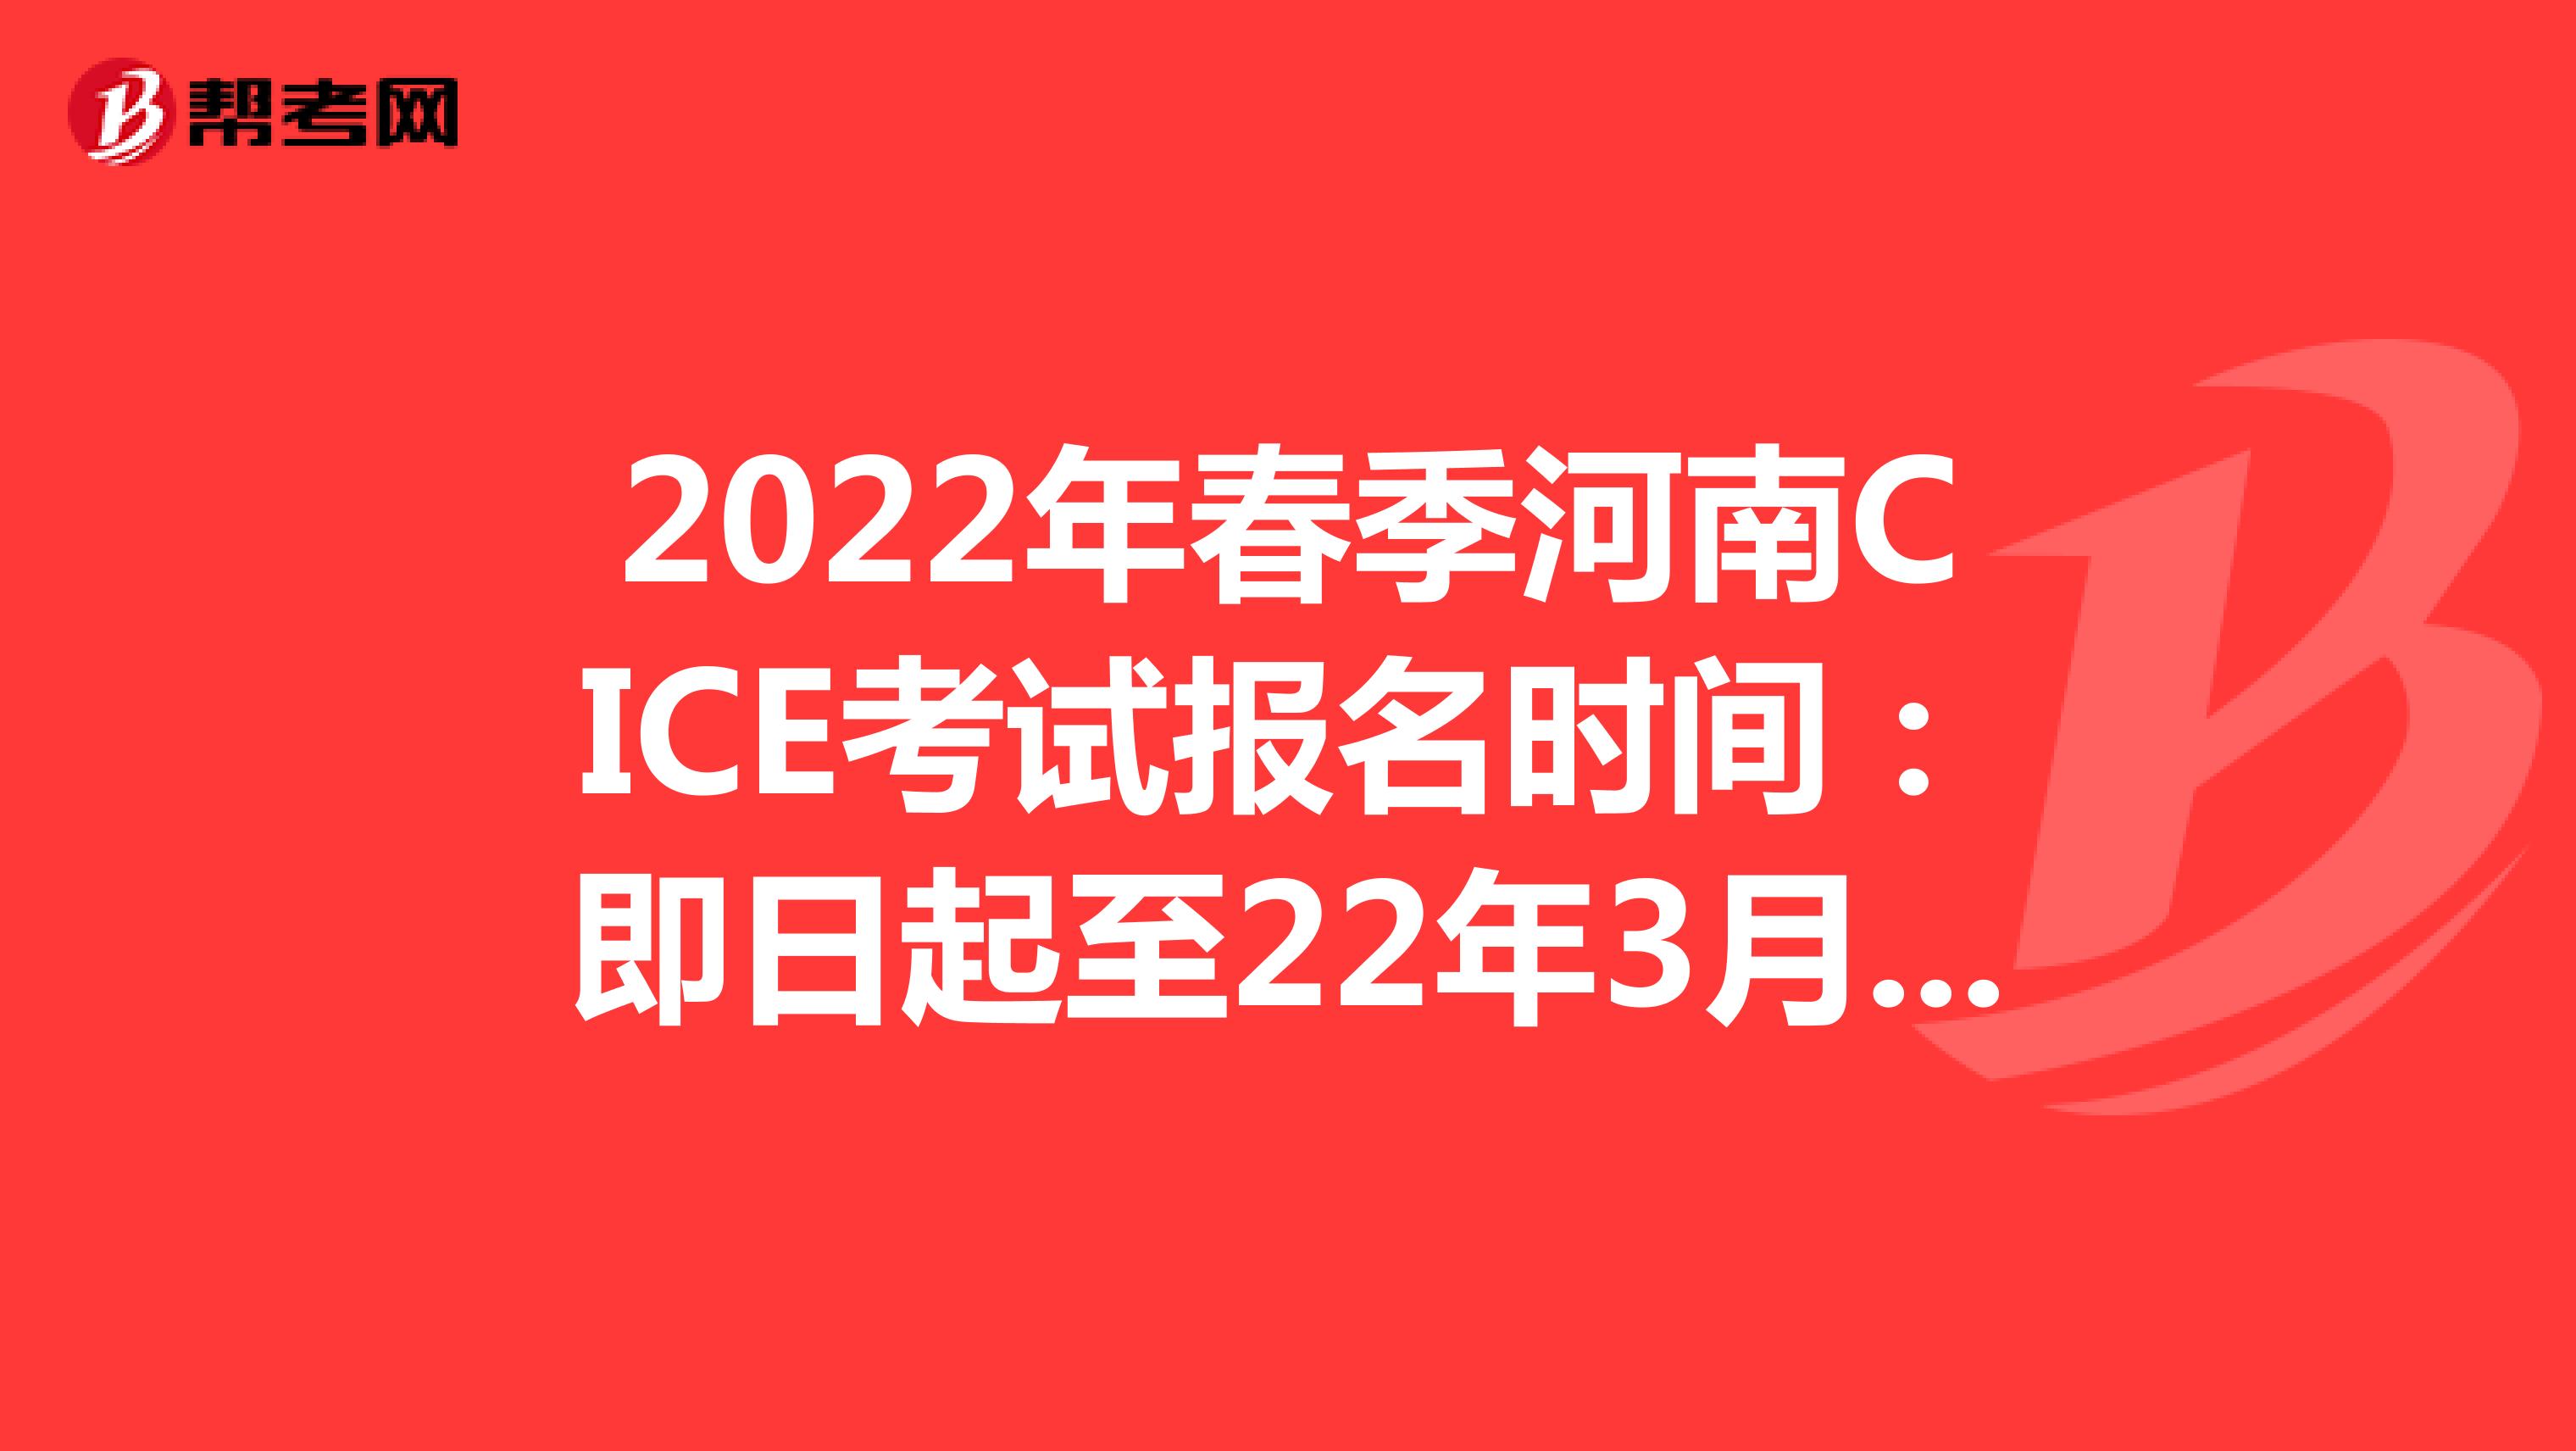 2022年春季河南CICE考试报名时间：即日起至22年3月31日